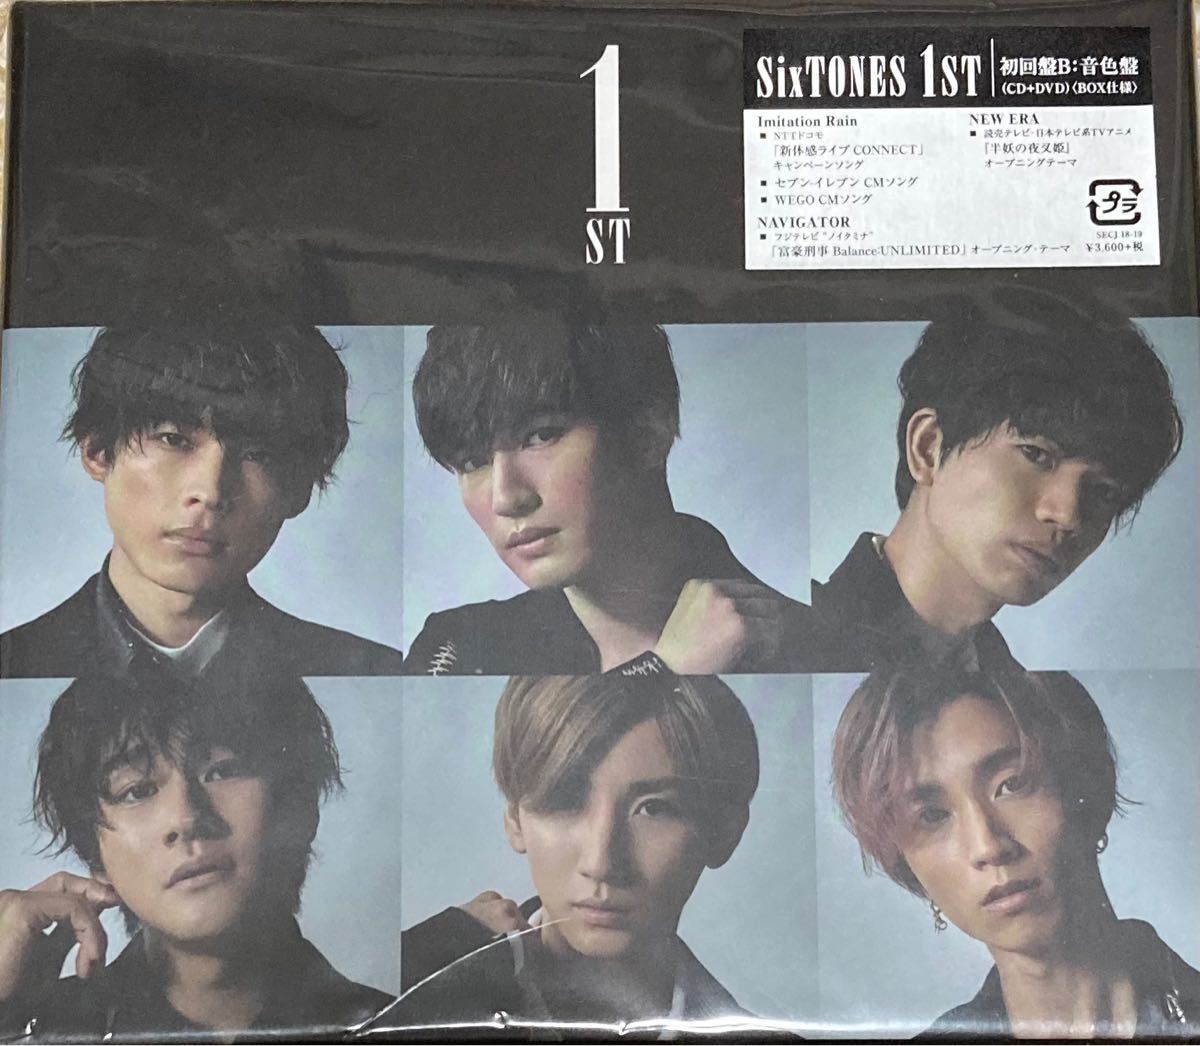 11748円 特別オファー 新品初回盤B 音色盤 CD DVD SixTONES 1ST ストーンズ